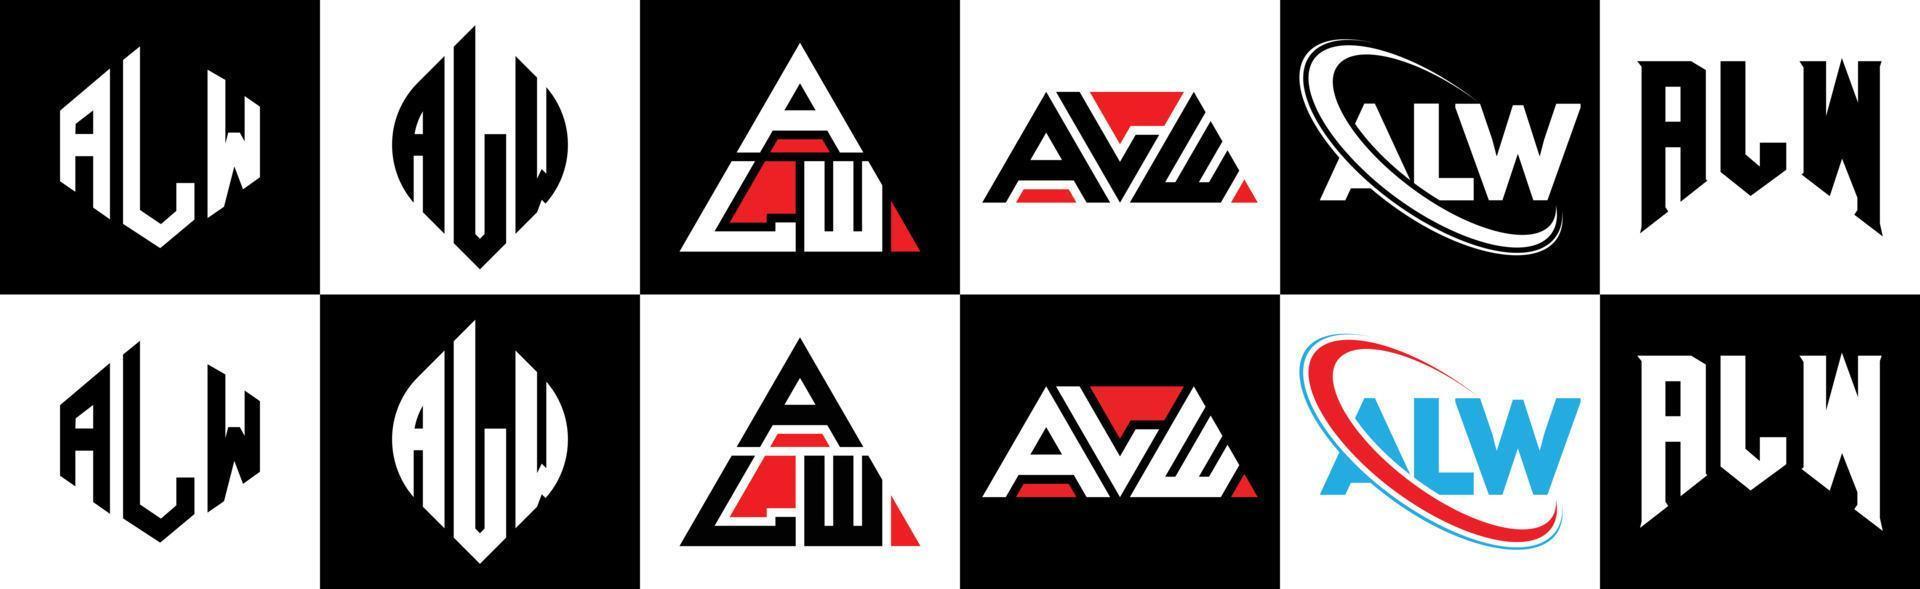 création de logo de lettre alw en six styles. alw polygone, cercle, triangle, hexagone, style plat et simple avec logo de lettre de variation de couleur noir et blanc dans un plan de travail. alw logo minimaliste et classique vecteur